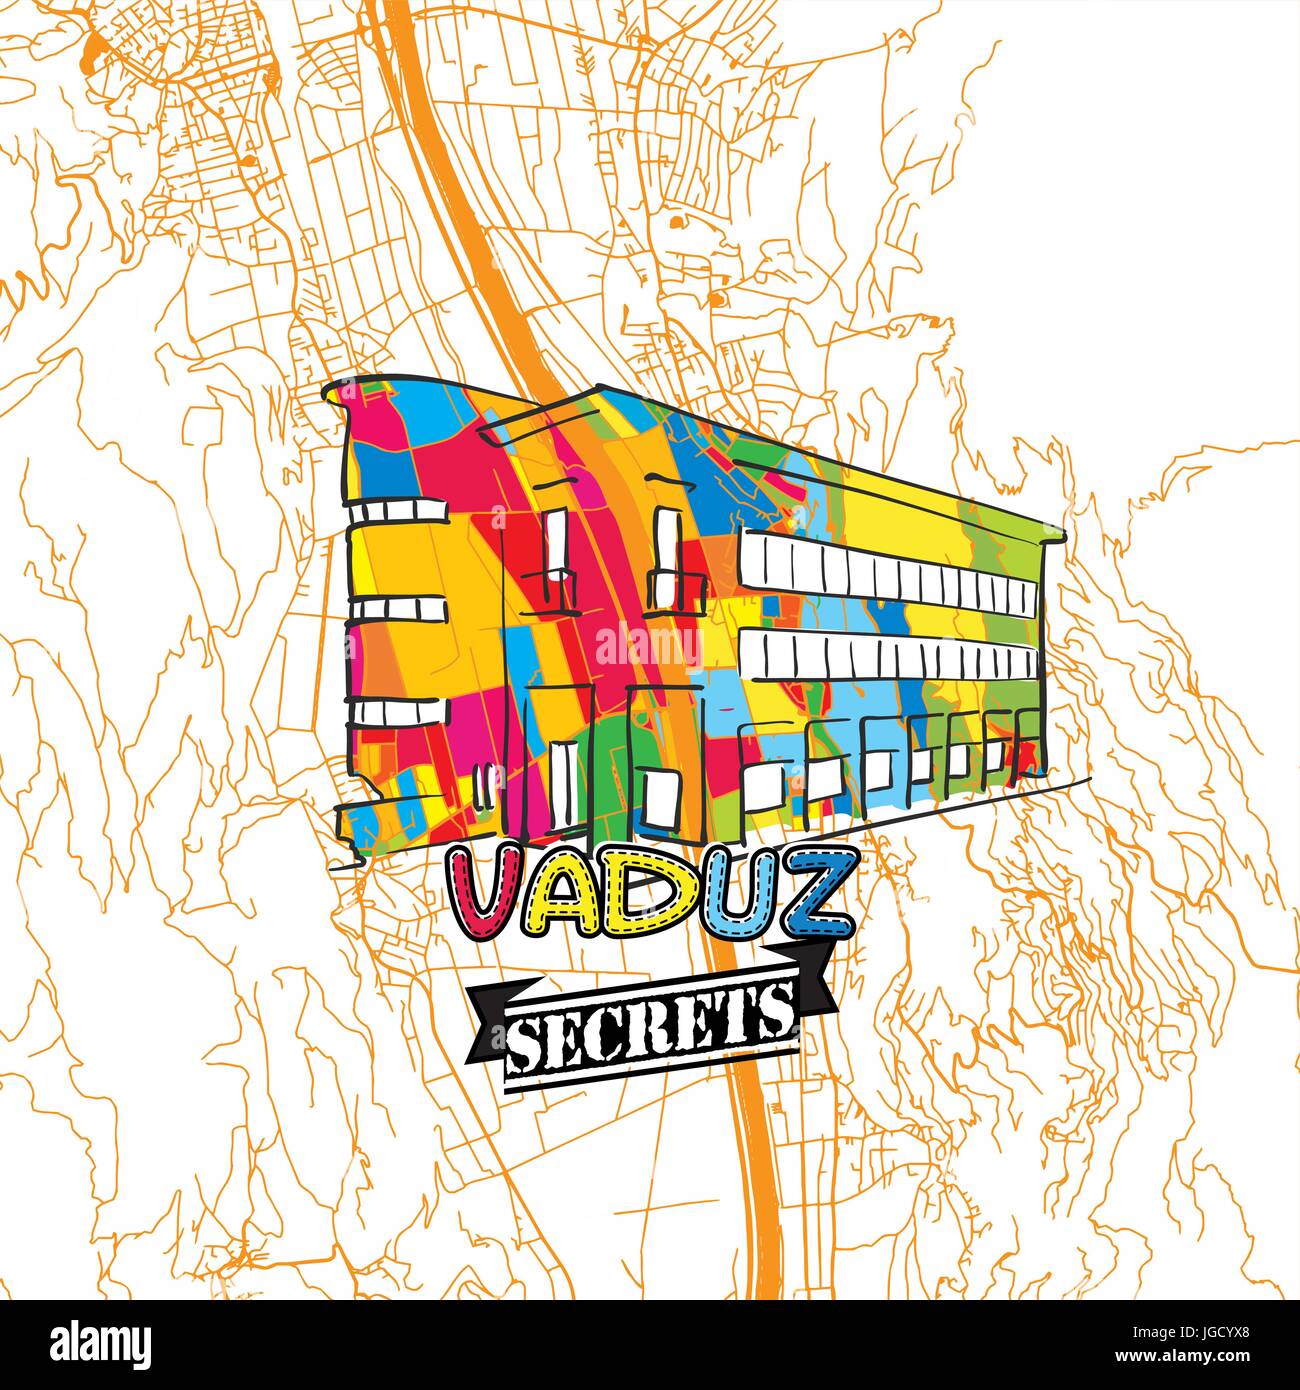 Vaduz Reisen Geheimnisse Art Map für die Zuordnung von Experten und Reiseführer. Handgemachte Stadt Logo, Typo-Abzeichen und Hand gezeichnete Vektor-Bild an der Spitze sind gruppiert und Stock Vektor